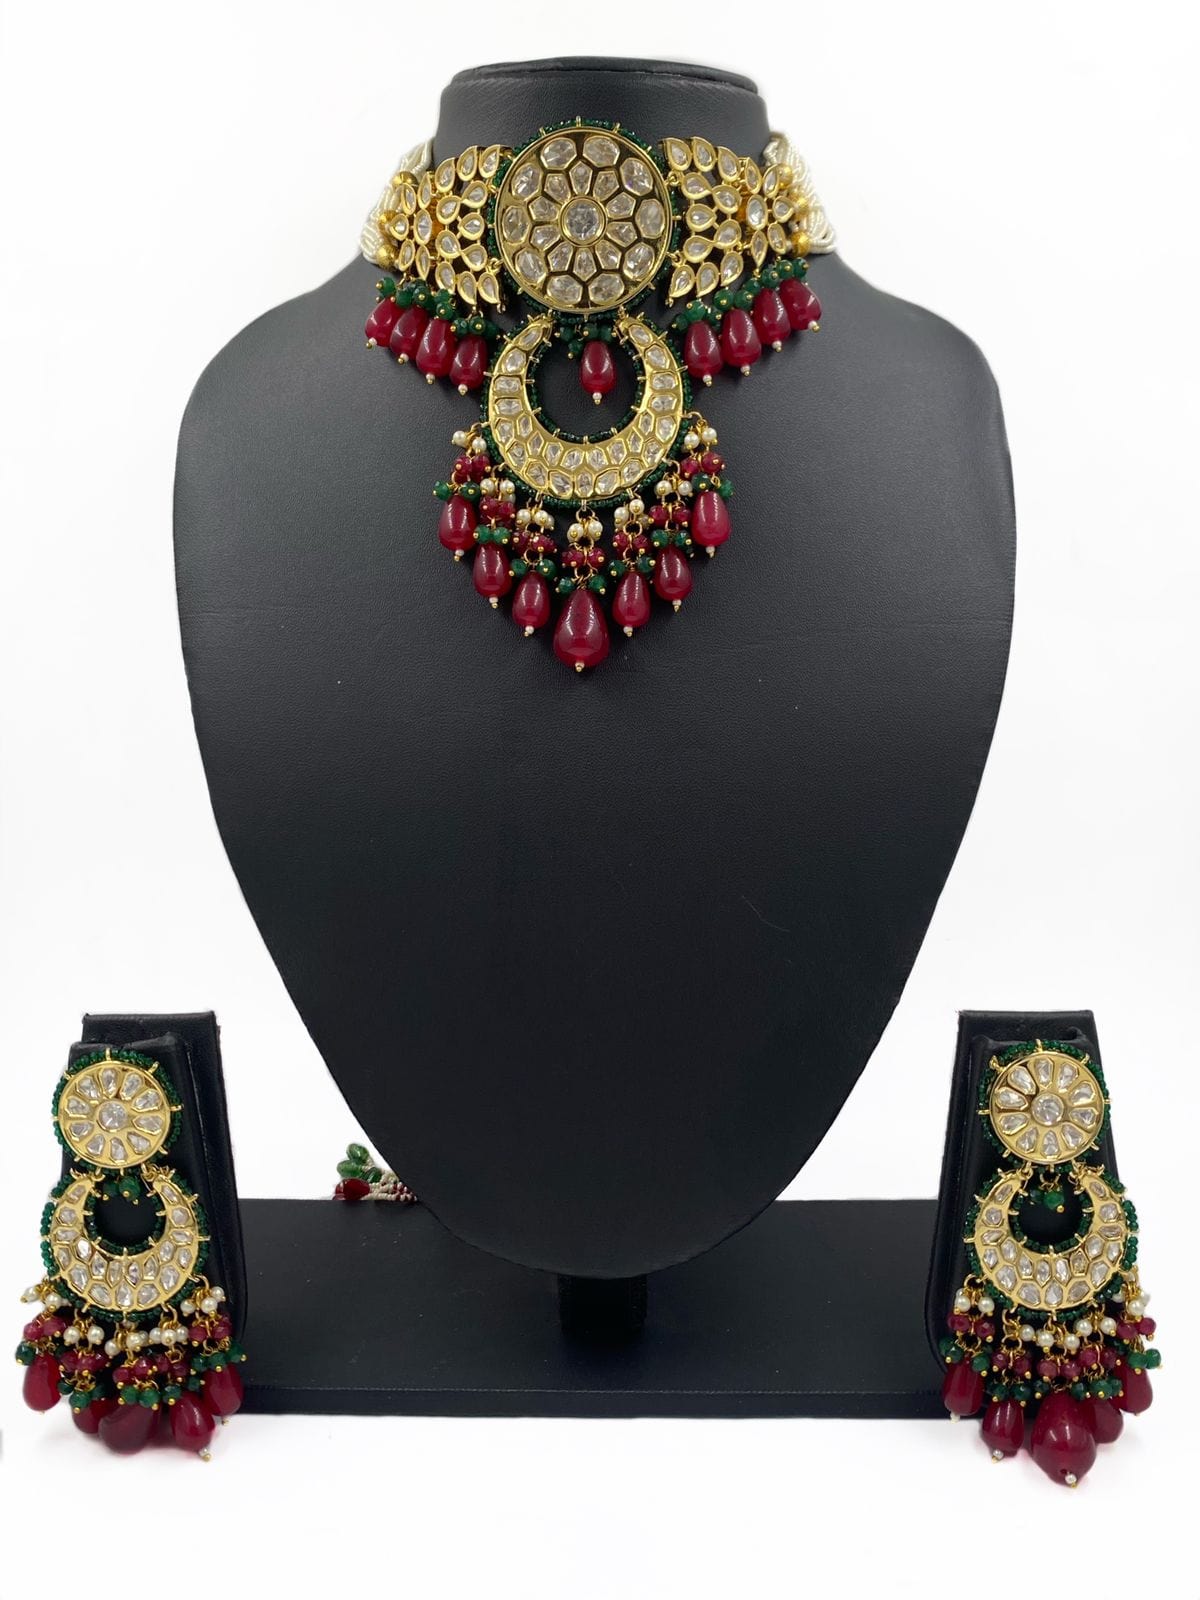 Western Earrings - Buy Western Earrings online at Best Prices in India |  Flipkart.com